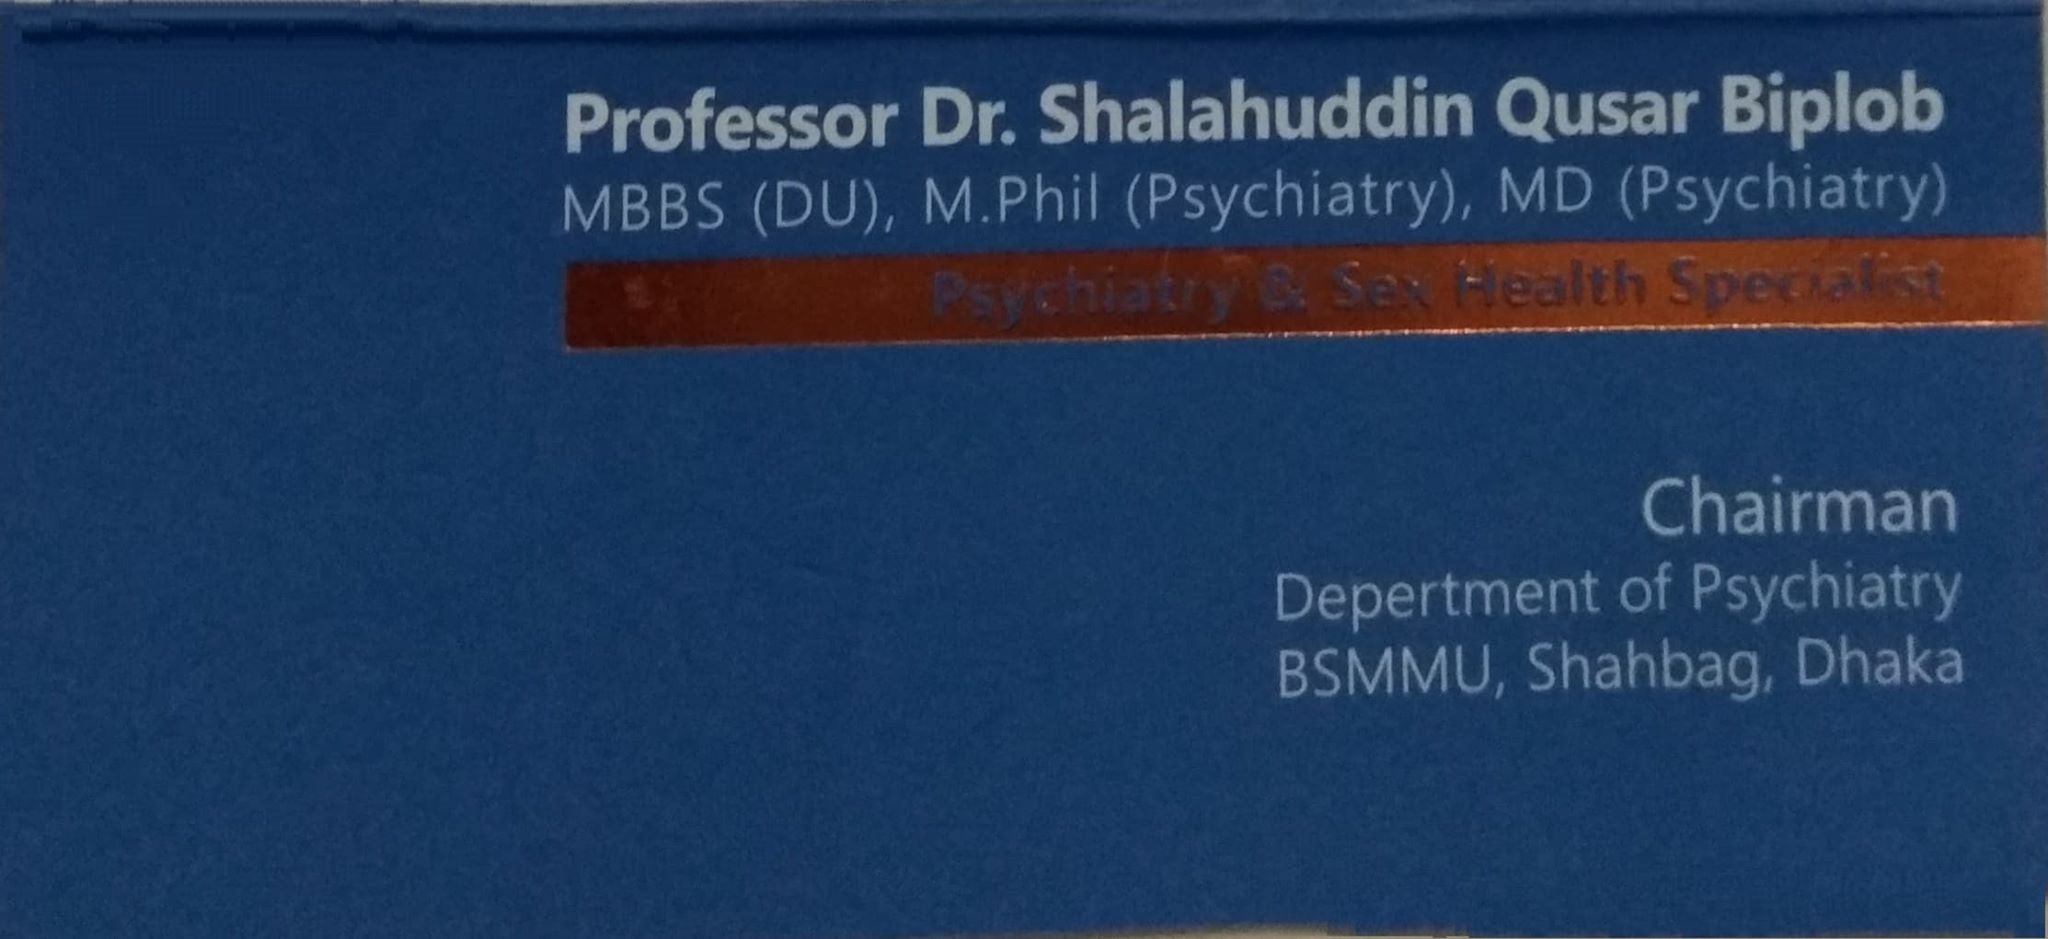 PROF. DR. SHALAUDDIN QUSAR BIPLOB